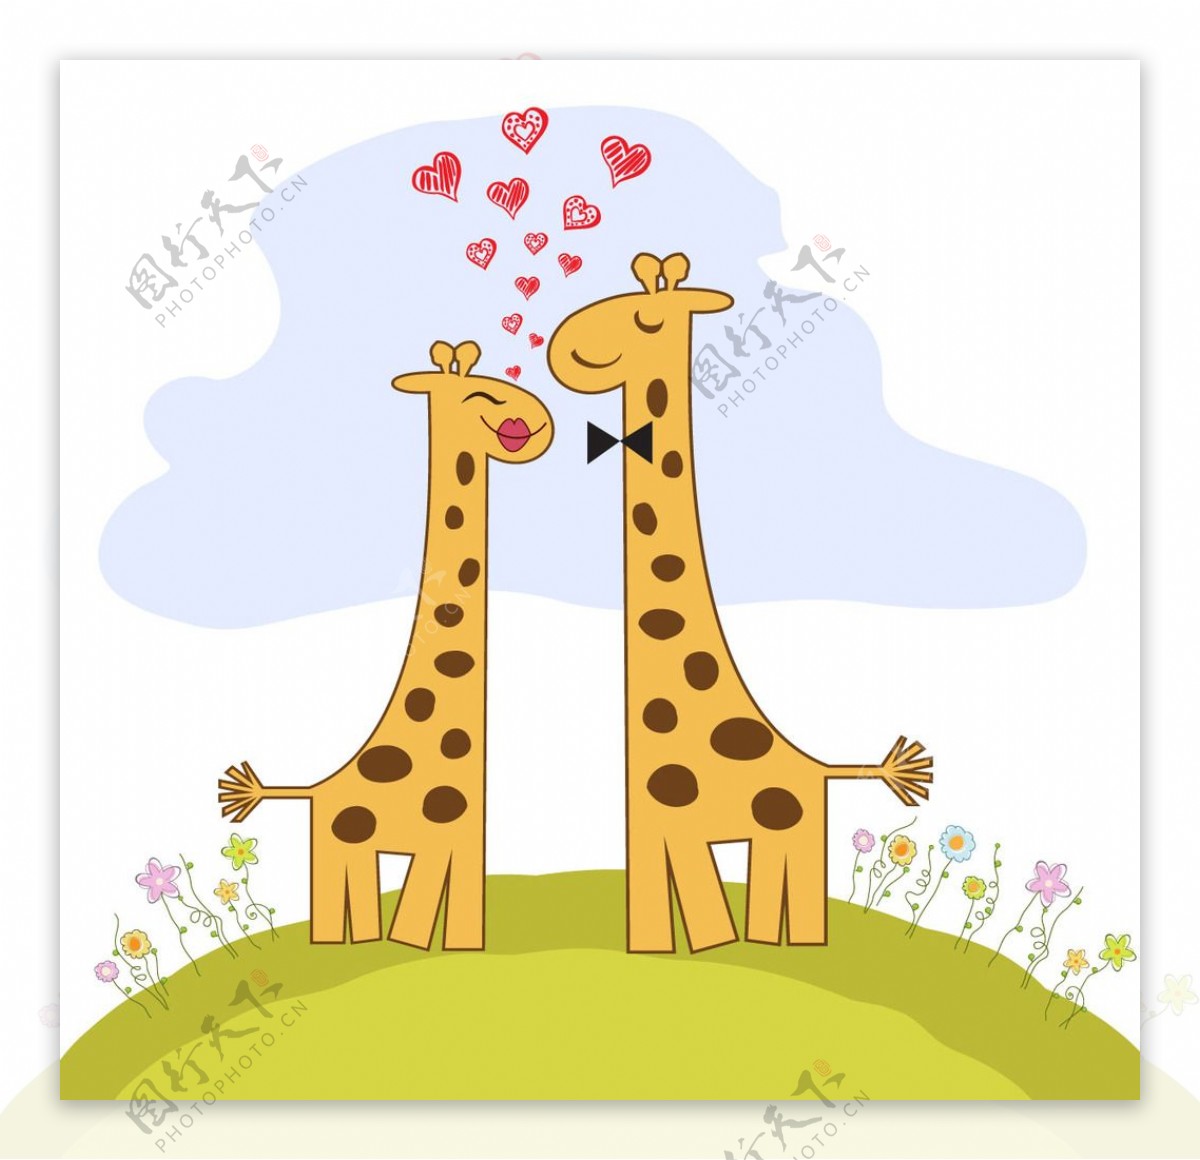 搞笑长颈鹿夫妇在爱情人节